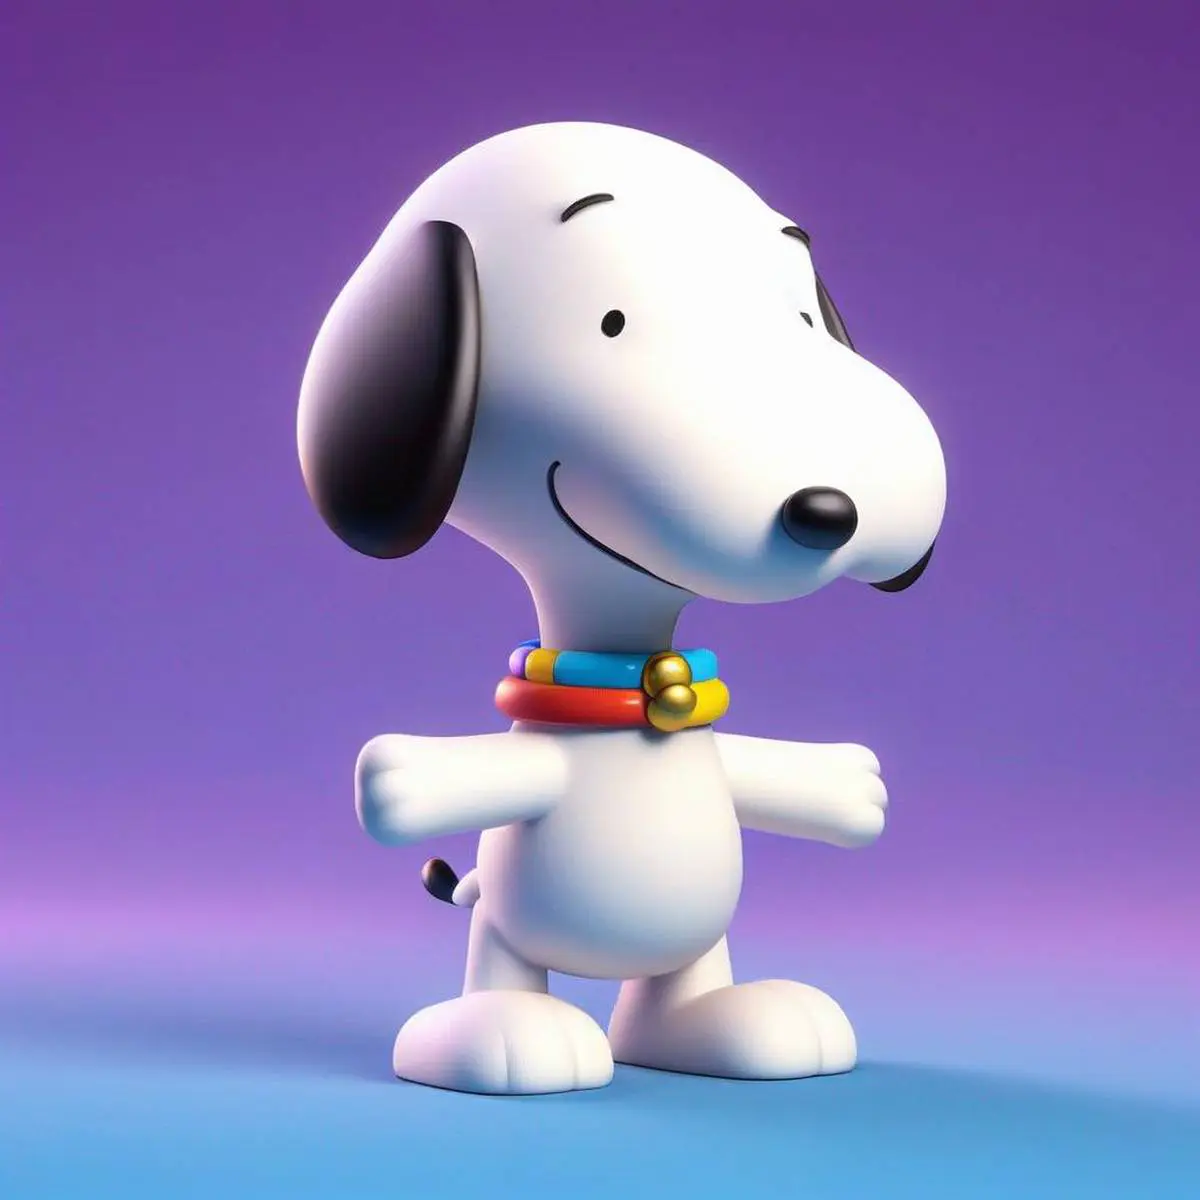 Snoopy puns